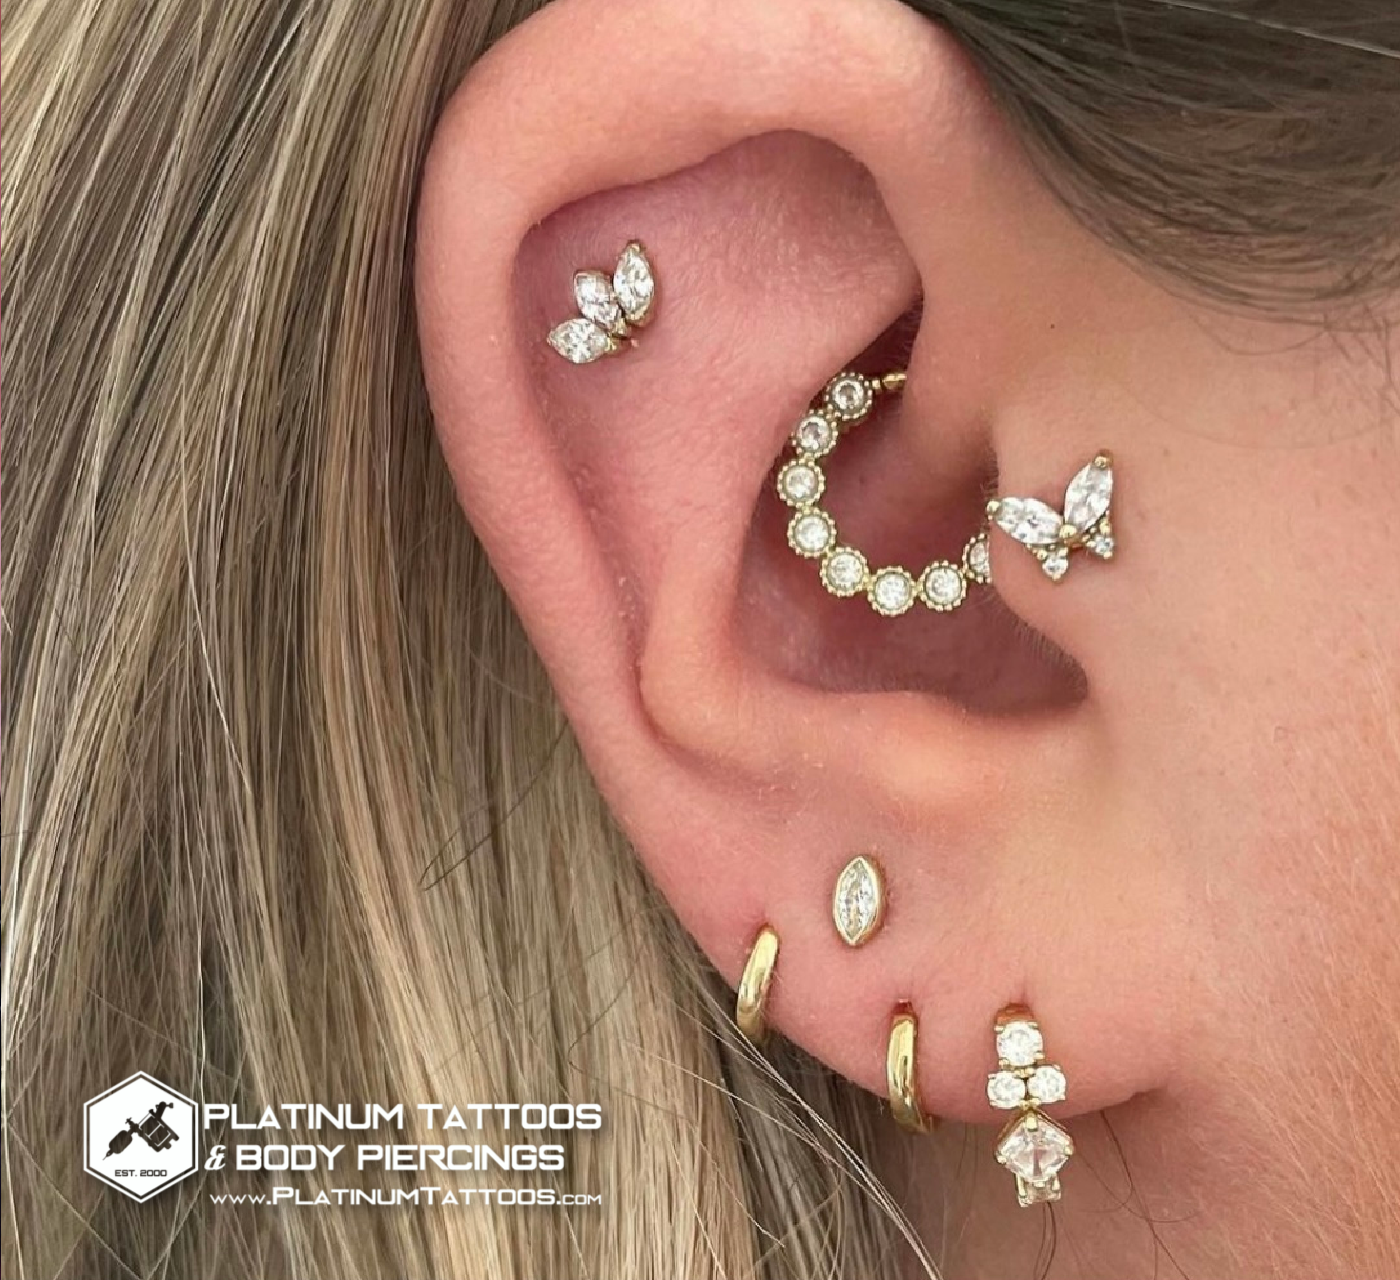 Curated Ear Piercings @Platinum Tattoos & Piercings San Antonio, Tx